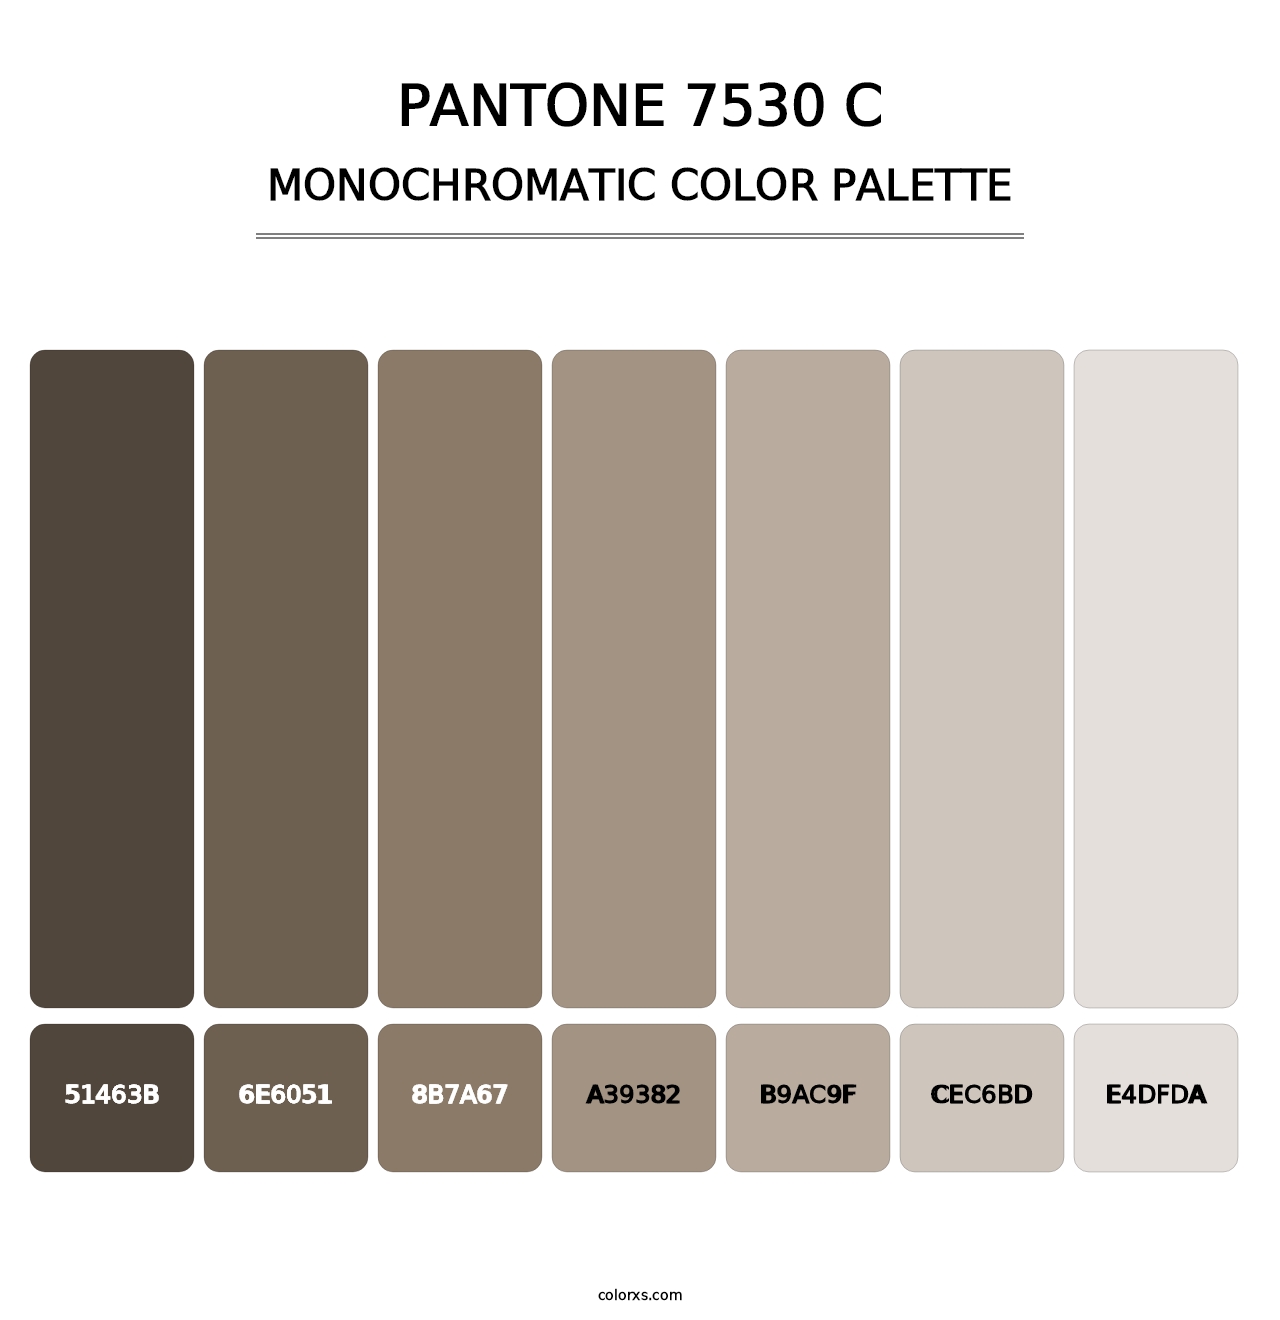 PANTONE 7530 C - Monochromatic Color Palette